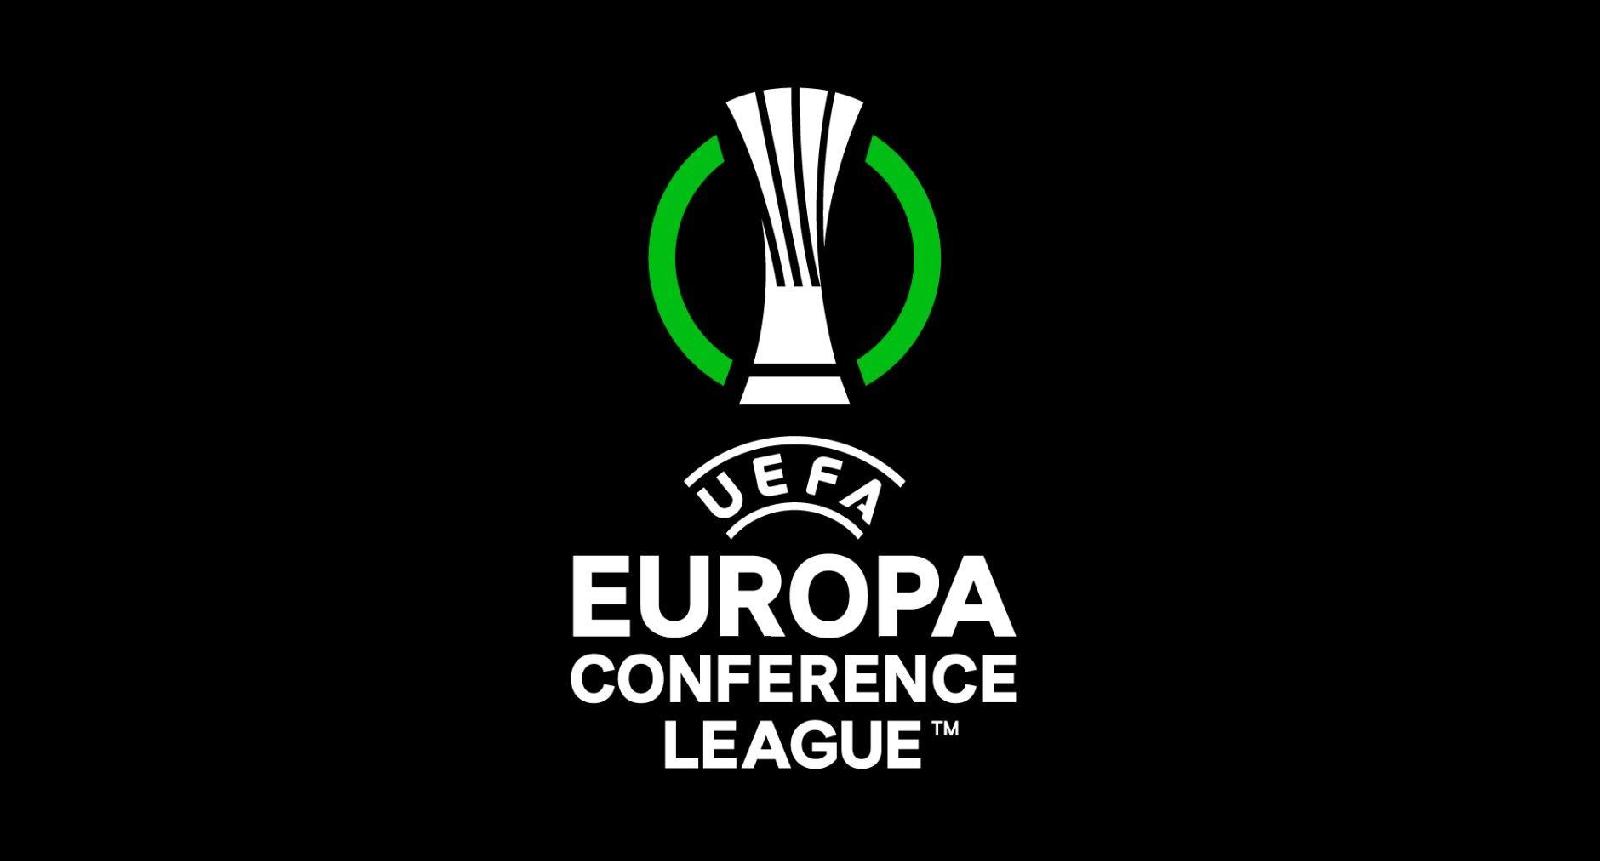 Trabzonspor Molde Europa Conference League: pronostico, probabili formazioni, 5 Agosto 2021